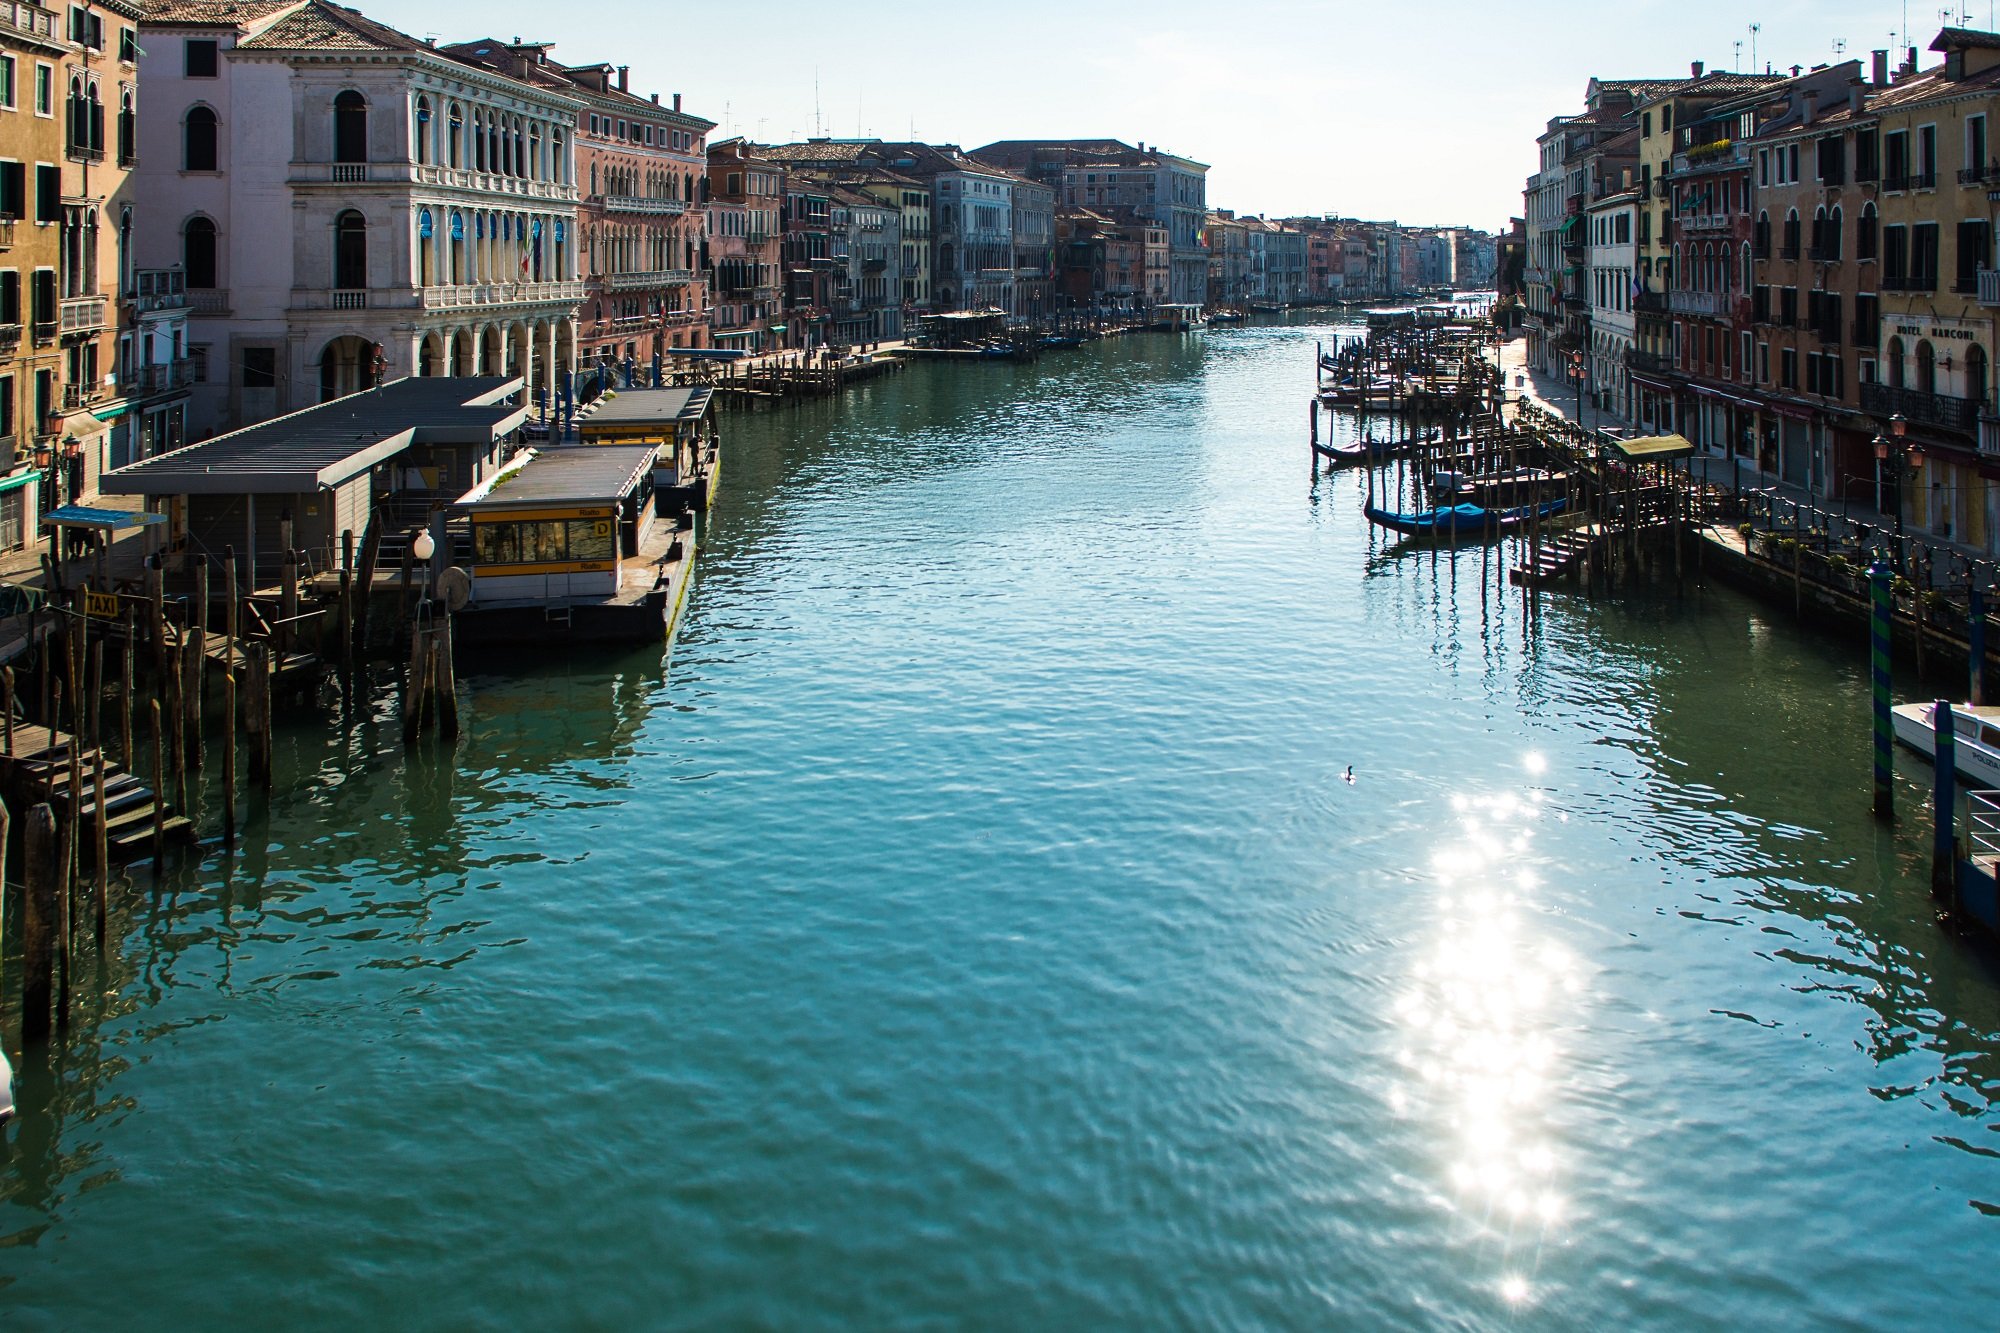 Canales de Venecia límpidos tras las medidas de aislamiento debidas al coronavirus | Foto: GettyImages